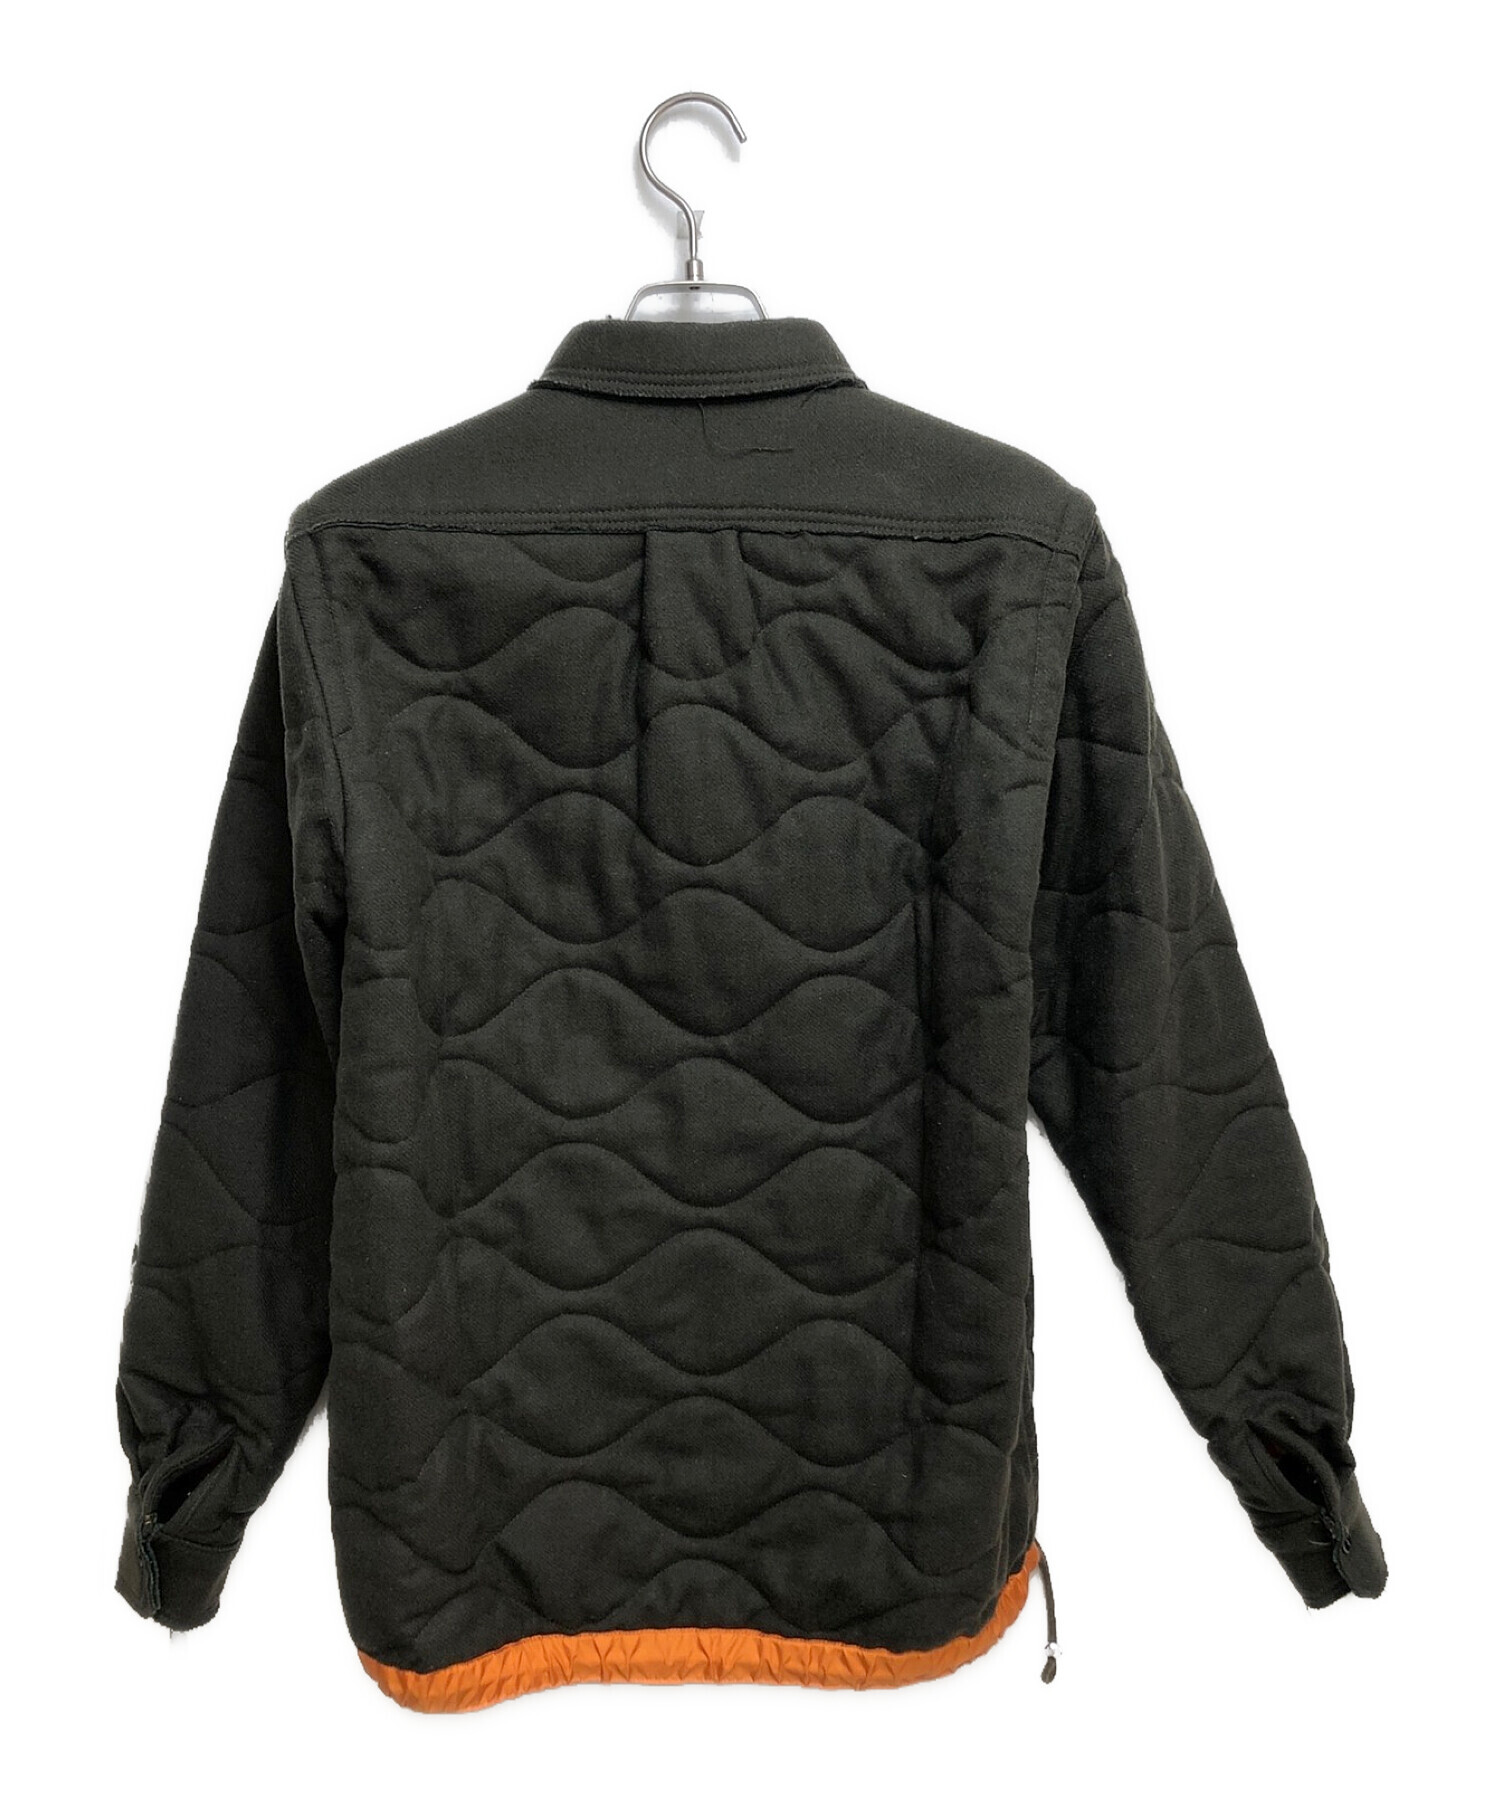 サカイ 中綿キルティングジャケット 2サイズ約47cm - テーラードジャケット